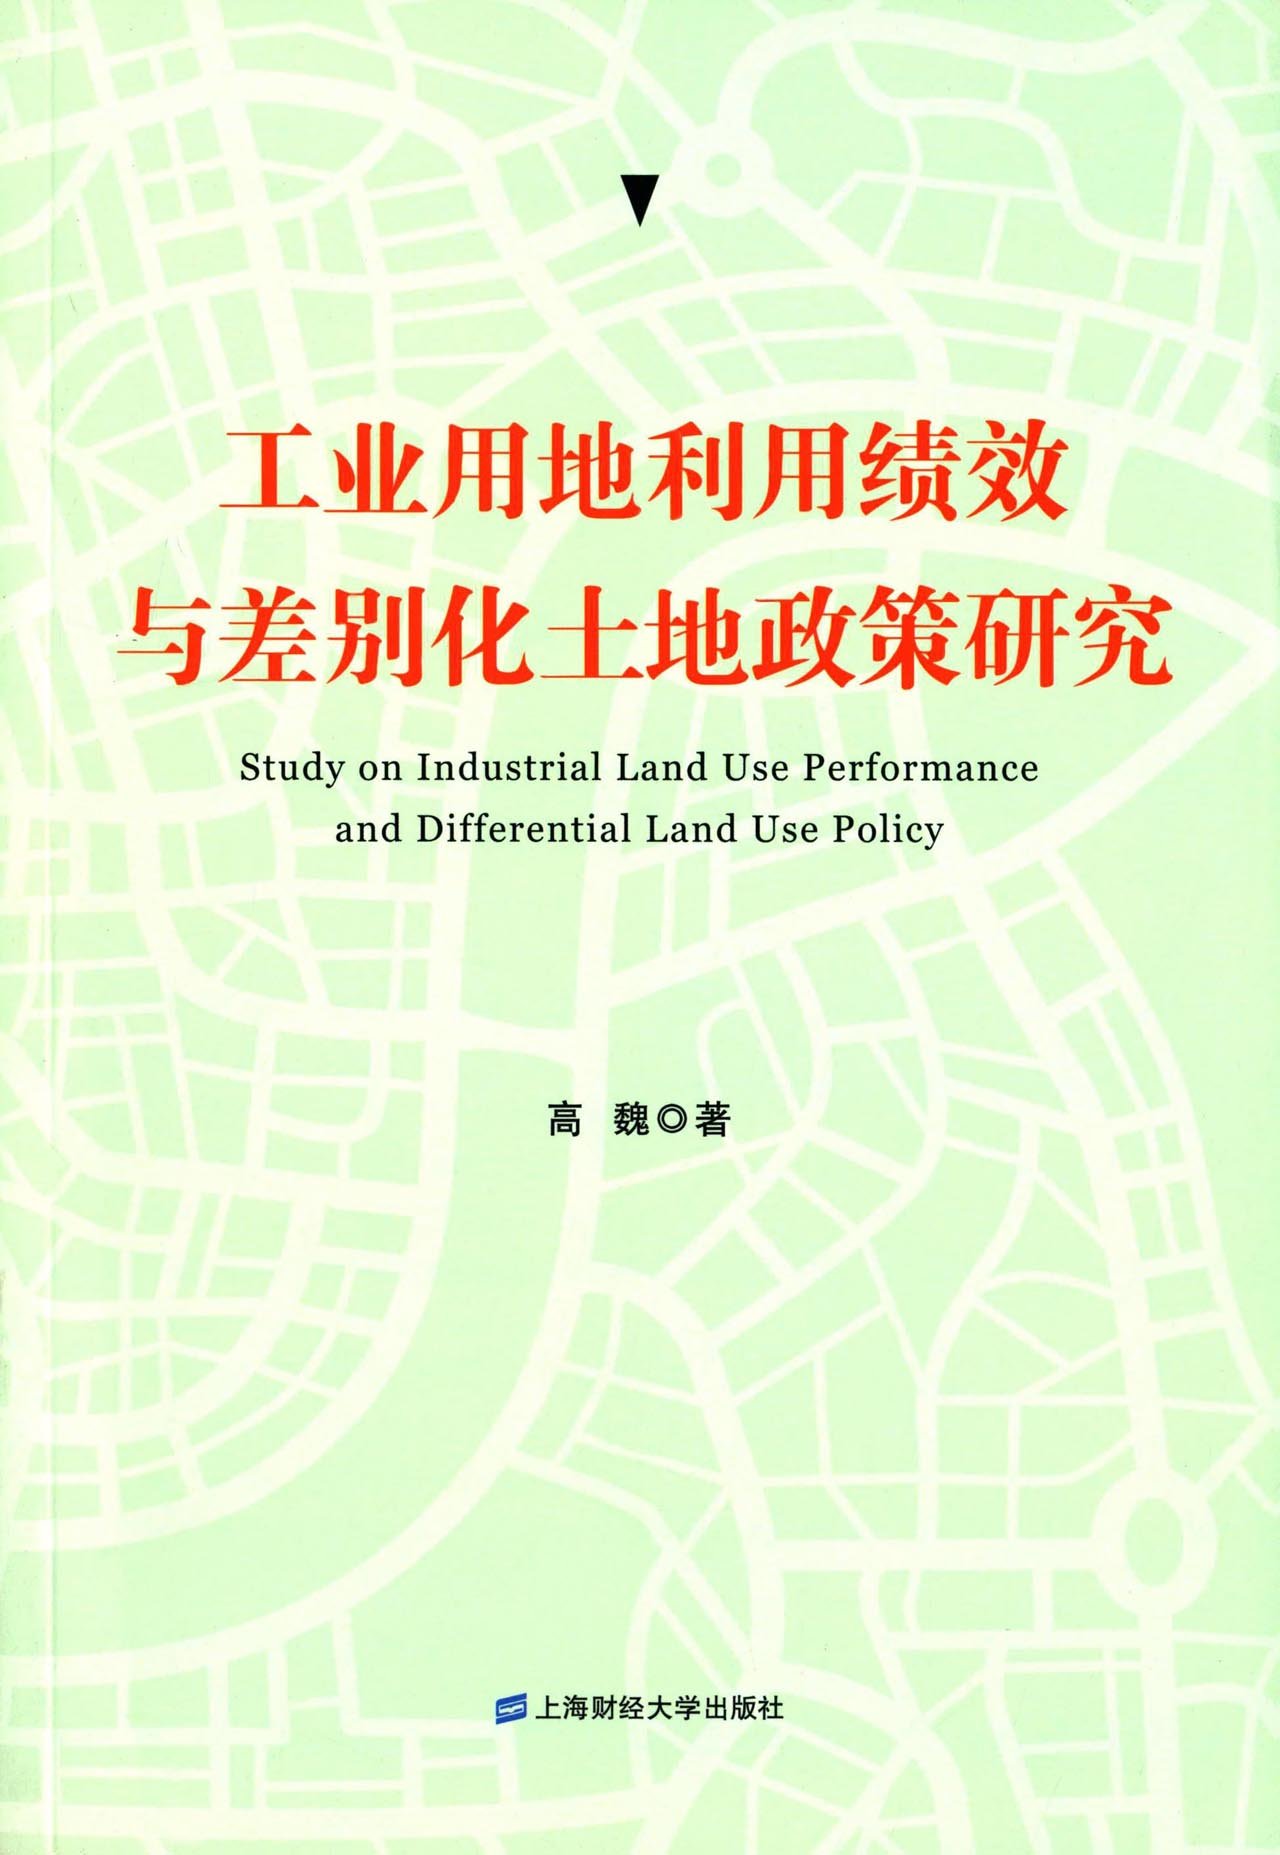 工业用地利用绩效与差别化土地政策研究 txt格式下载